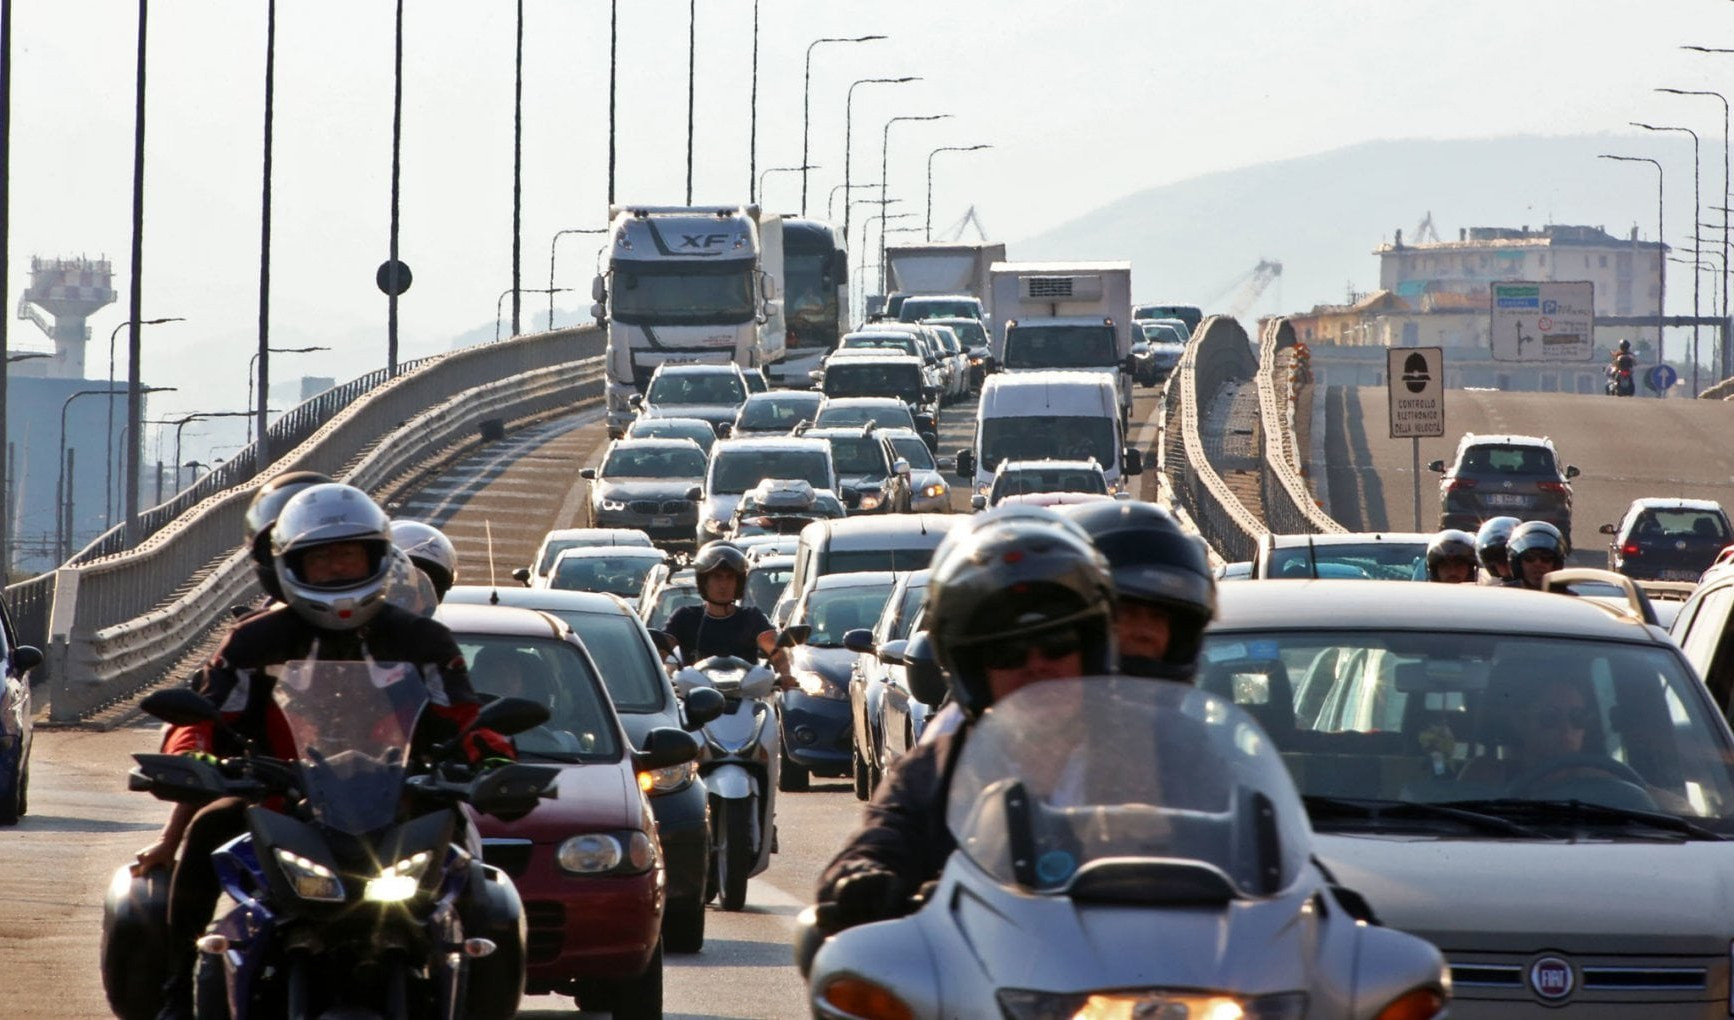 Stasera svelati i sondaggi Primocanale-Tecné: trasporti e priorità per la Liguria